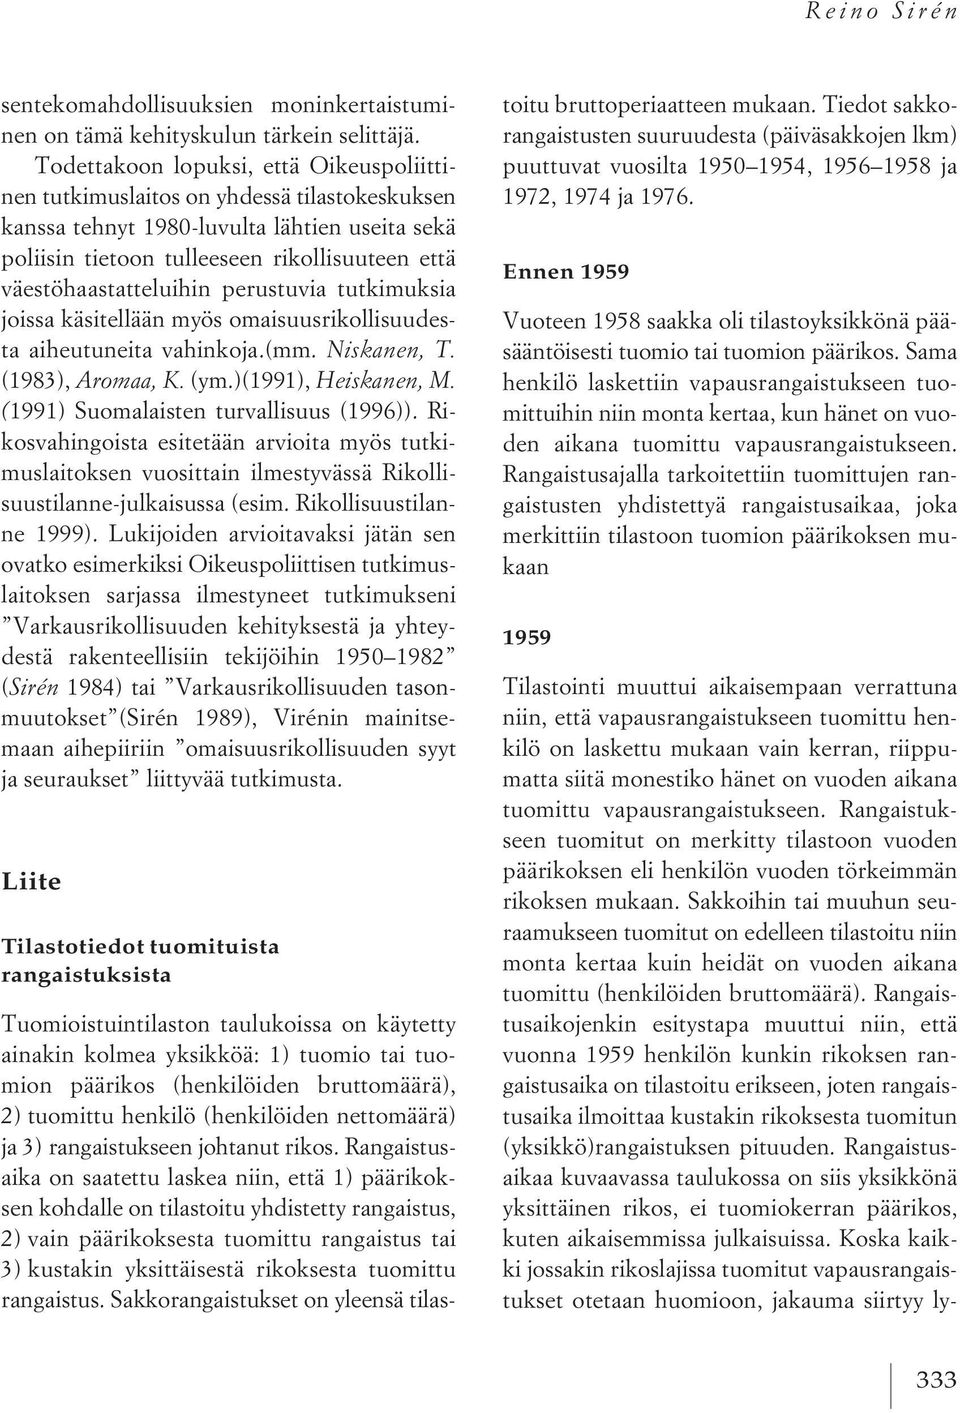 väestöhaastatteluihin perustuvia tutkimuksia joissa käsitellään myös omaisuusrikollisuudesta aiheutuneita vahinkoja.(mm. Niskanen, T. (1983), Aromaa, K. (ym.)(1991), Heiskanen, M.